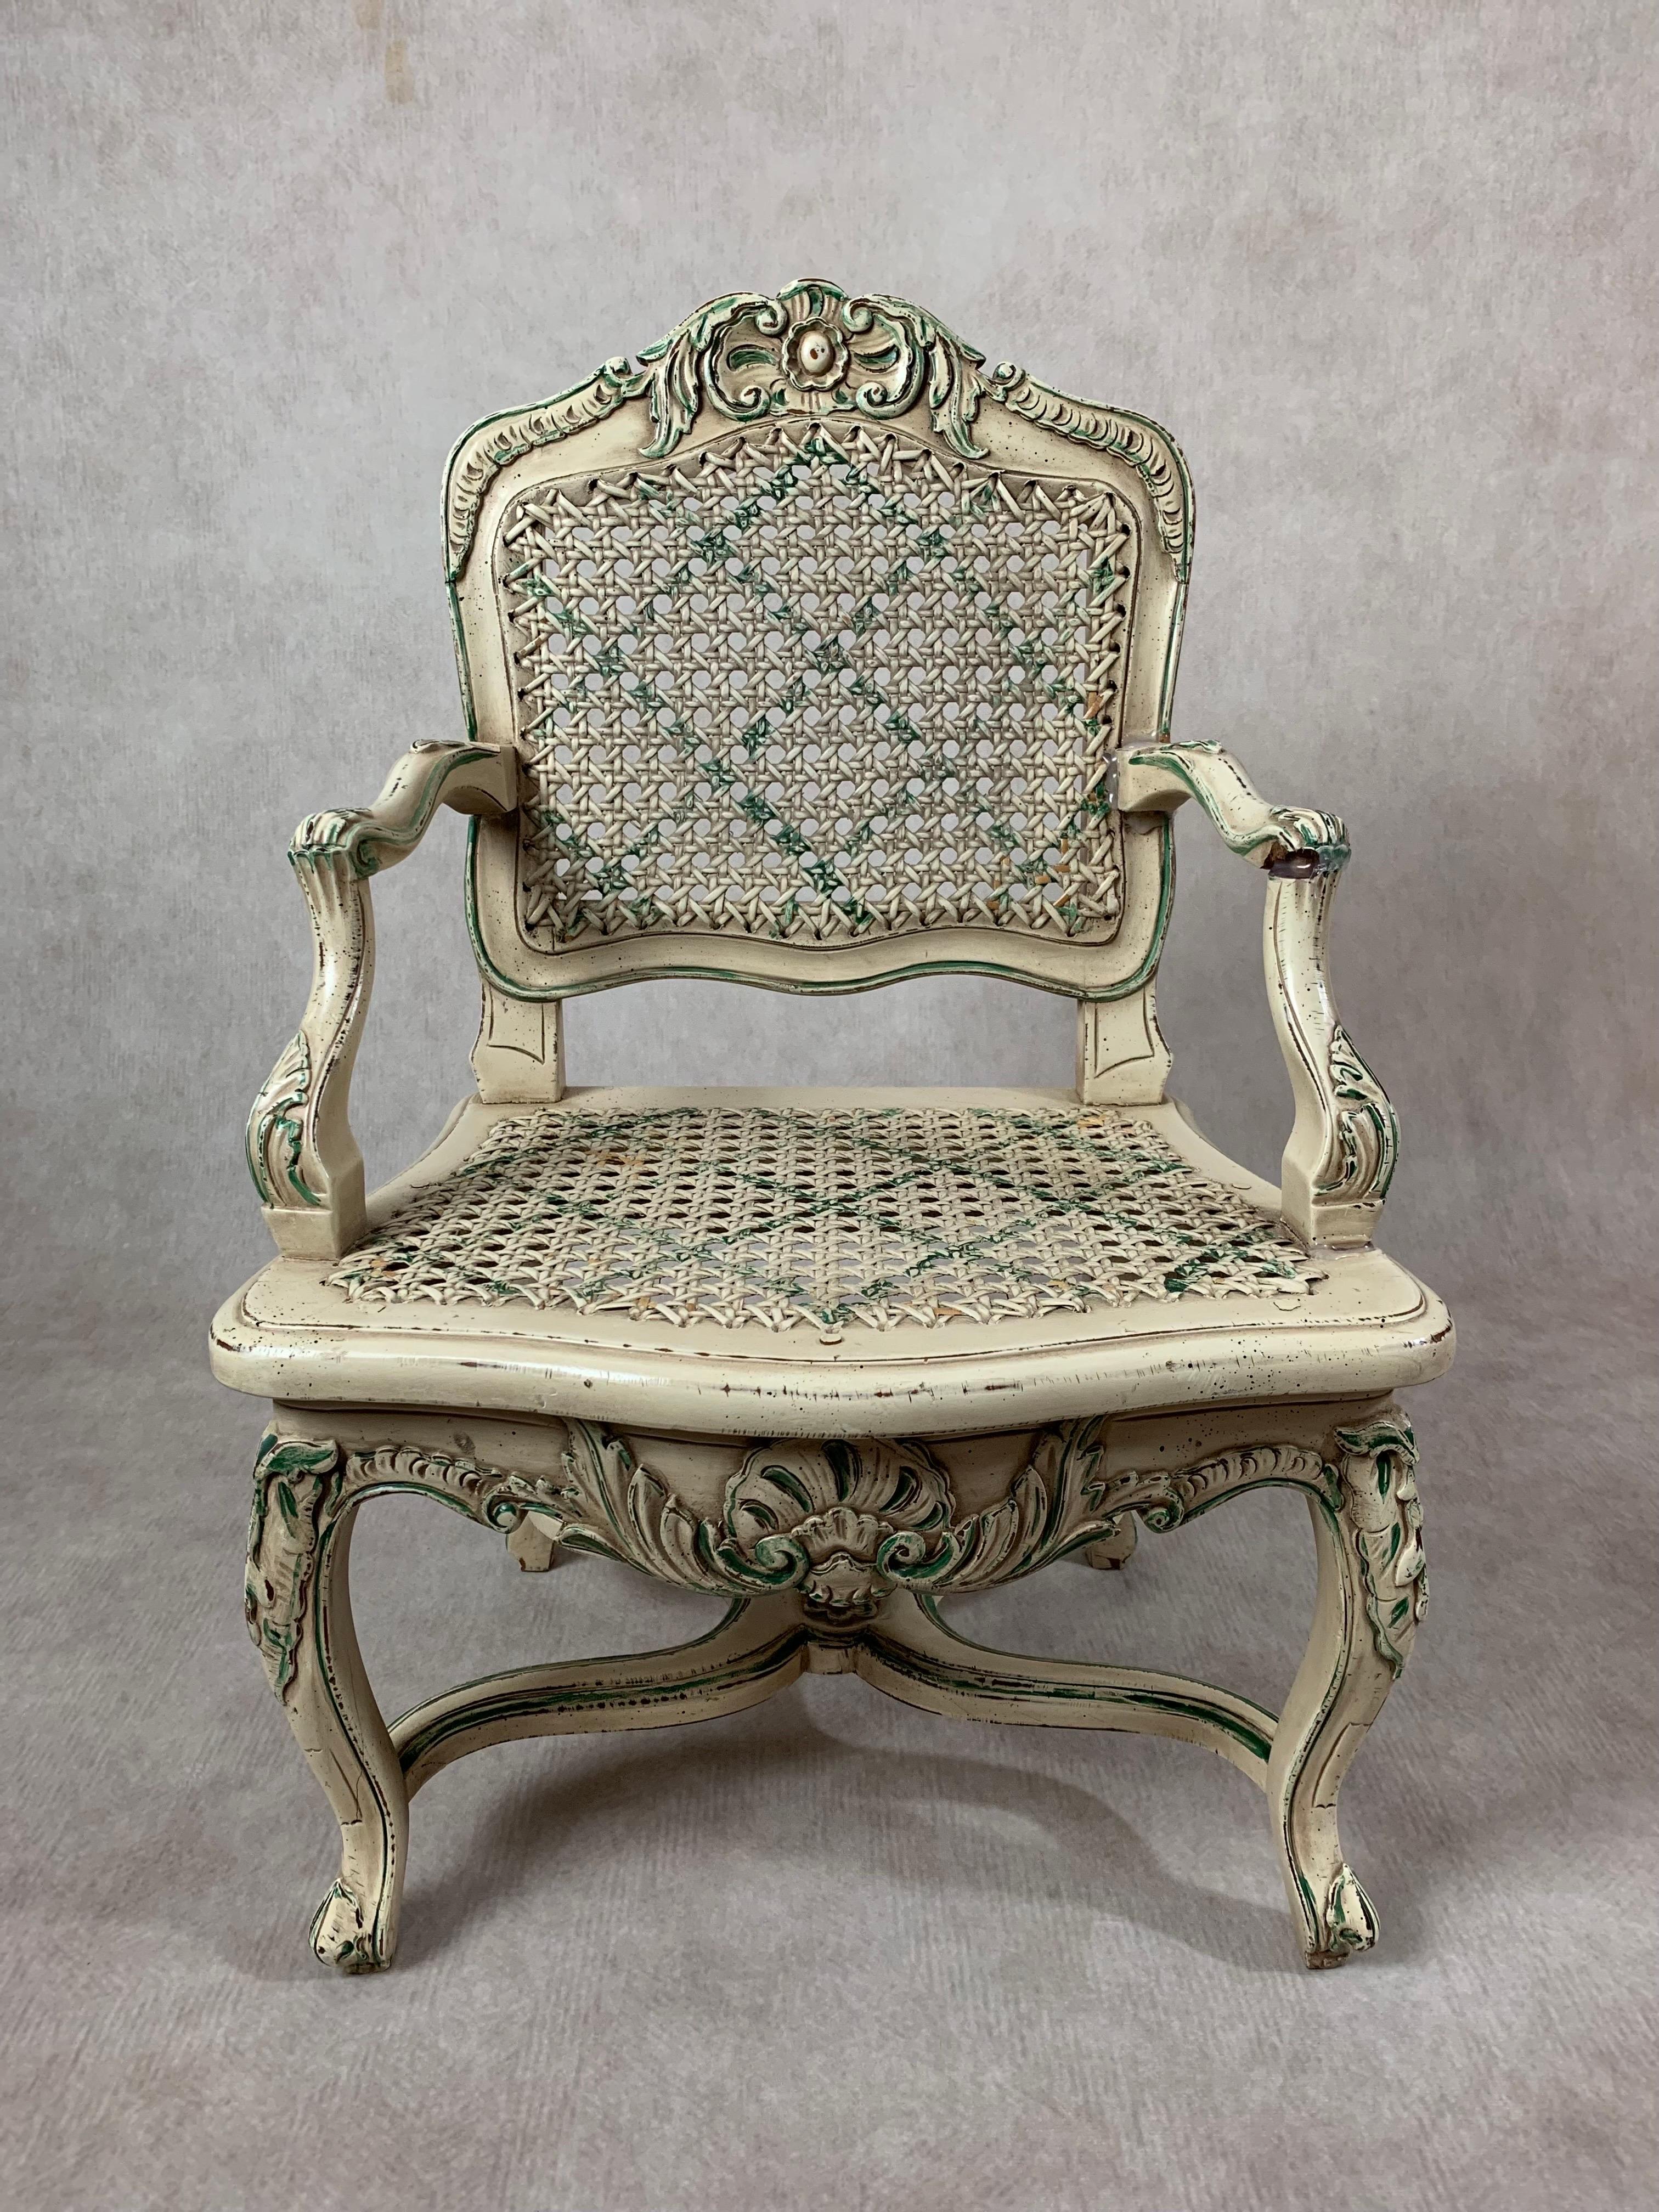 Ein hübsches Paar Miniatur-Louis XVI-Stil Caned Arm Stühle mit kunstvoll geschnitzt und gegossen Scrollwork mit handgemalten Details, Cabriole Beine, Caned zurück und Sitz. Ein Stuhl hat grüne und der andere lachsfarbene Akzente. 

Perfekt für die